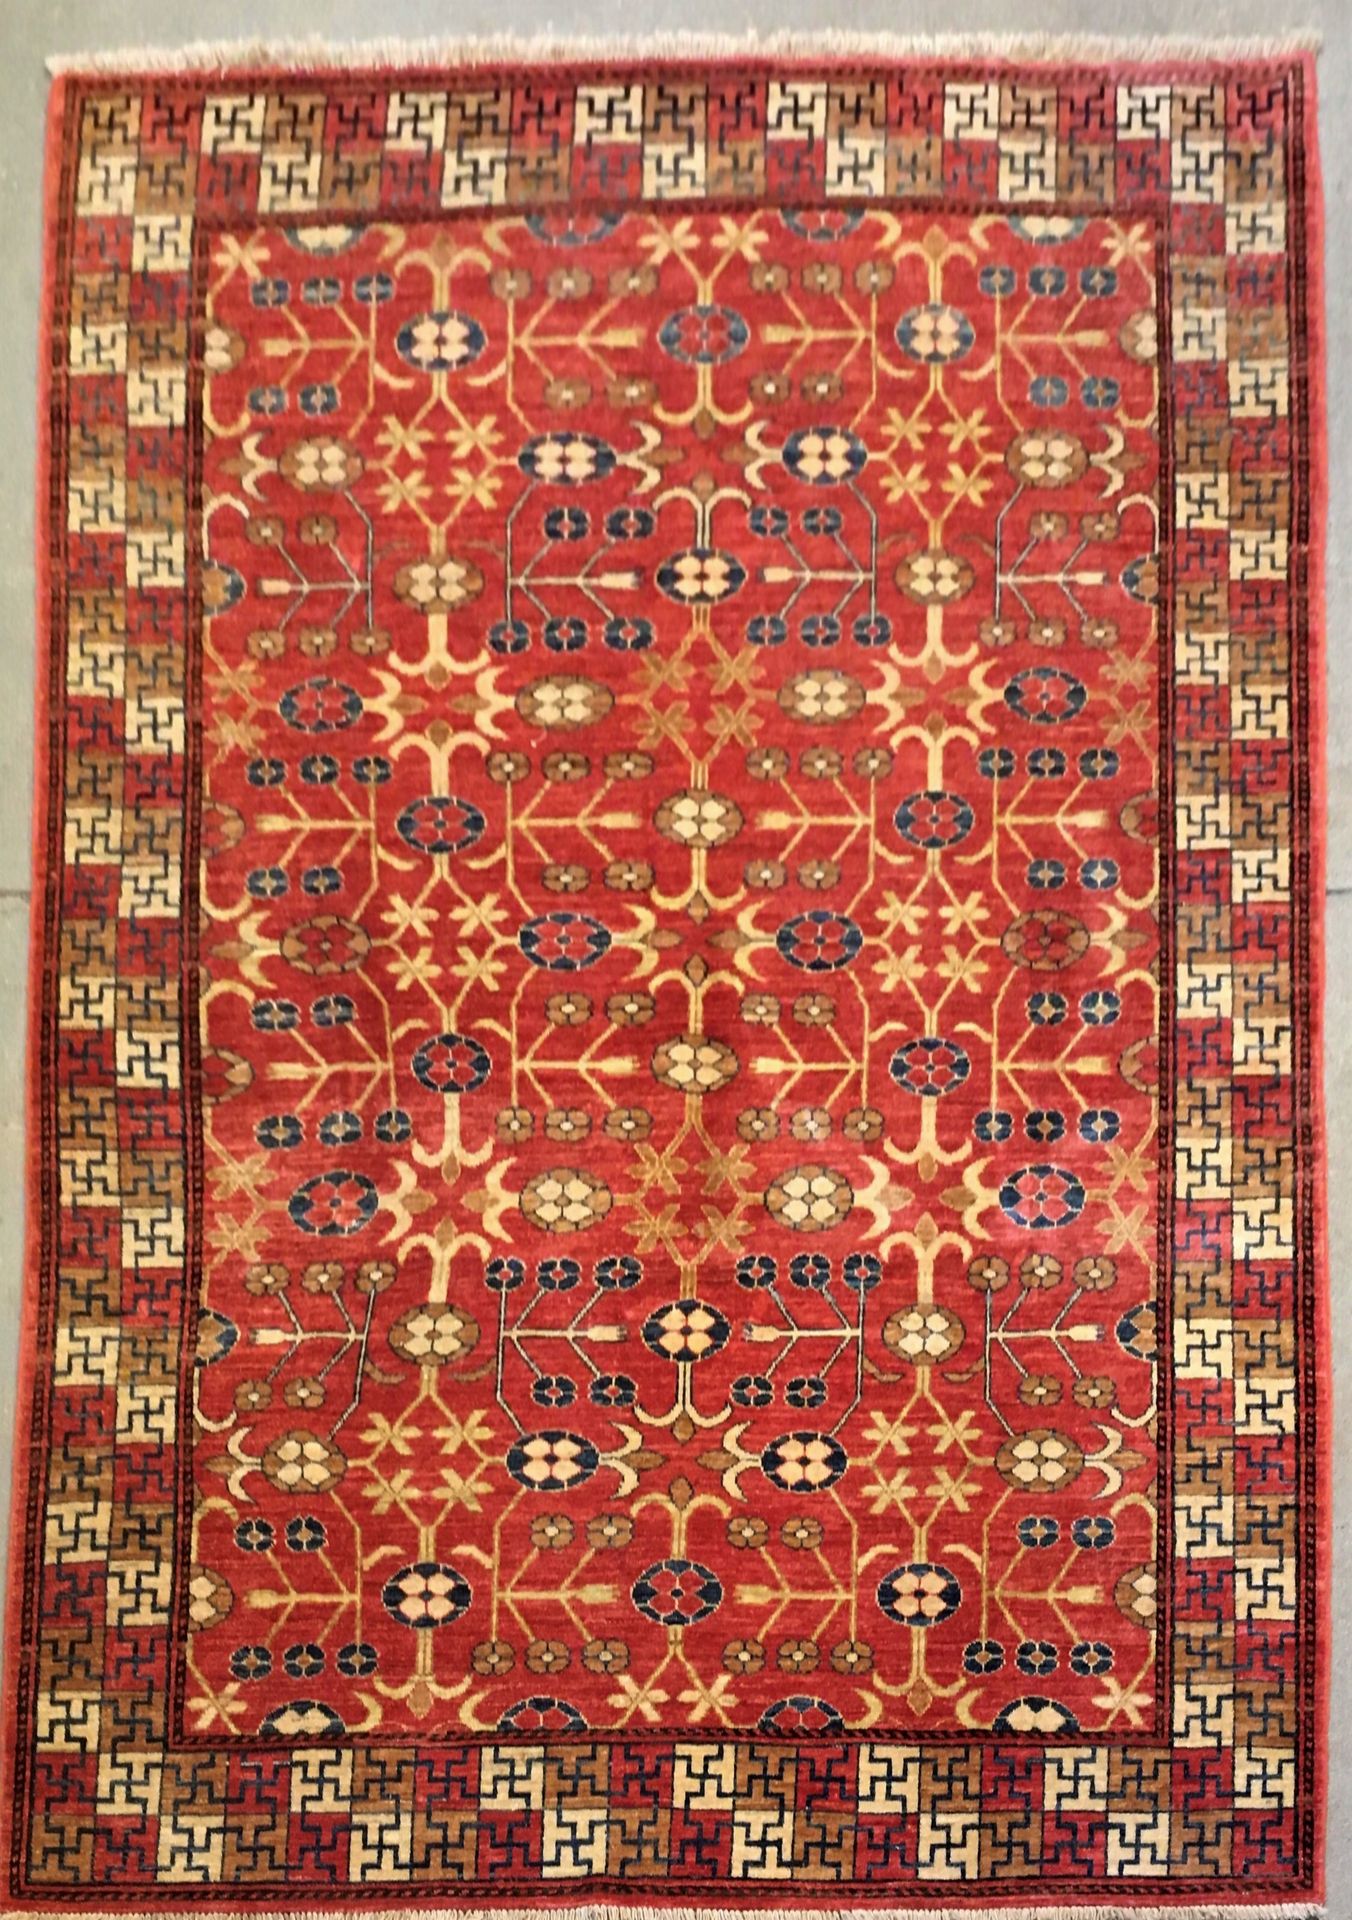 Null 非常具有装饰性的Shobi地毯，纬线和经线都是棉质的，羊毛绒，橙色的砖质背景上有风格化的玉米穗和花朵，边框有棋盘式装饰。尺寸：2.64 X 1.79米